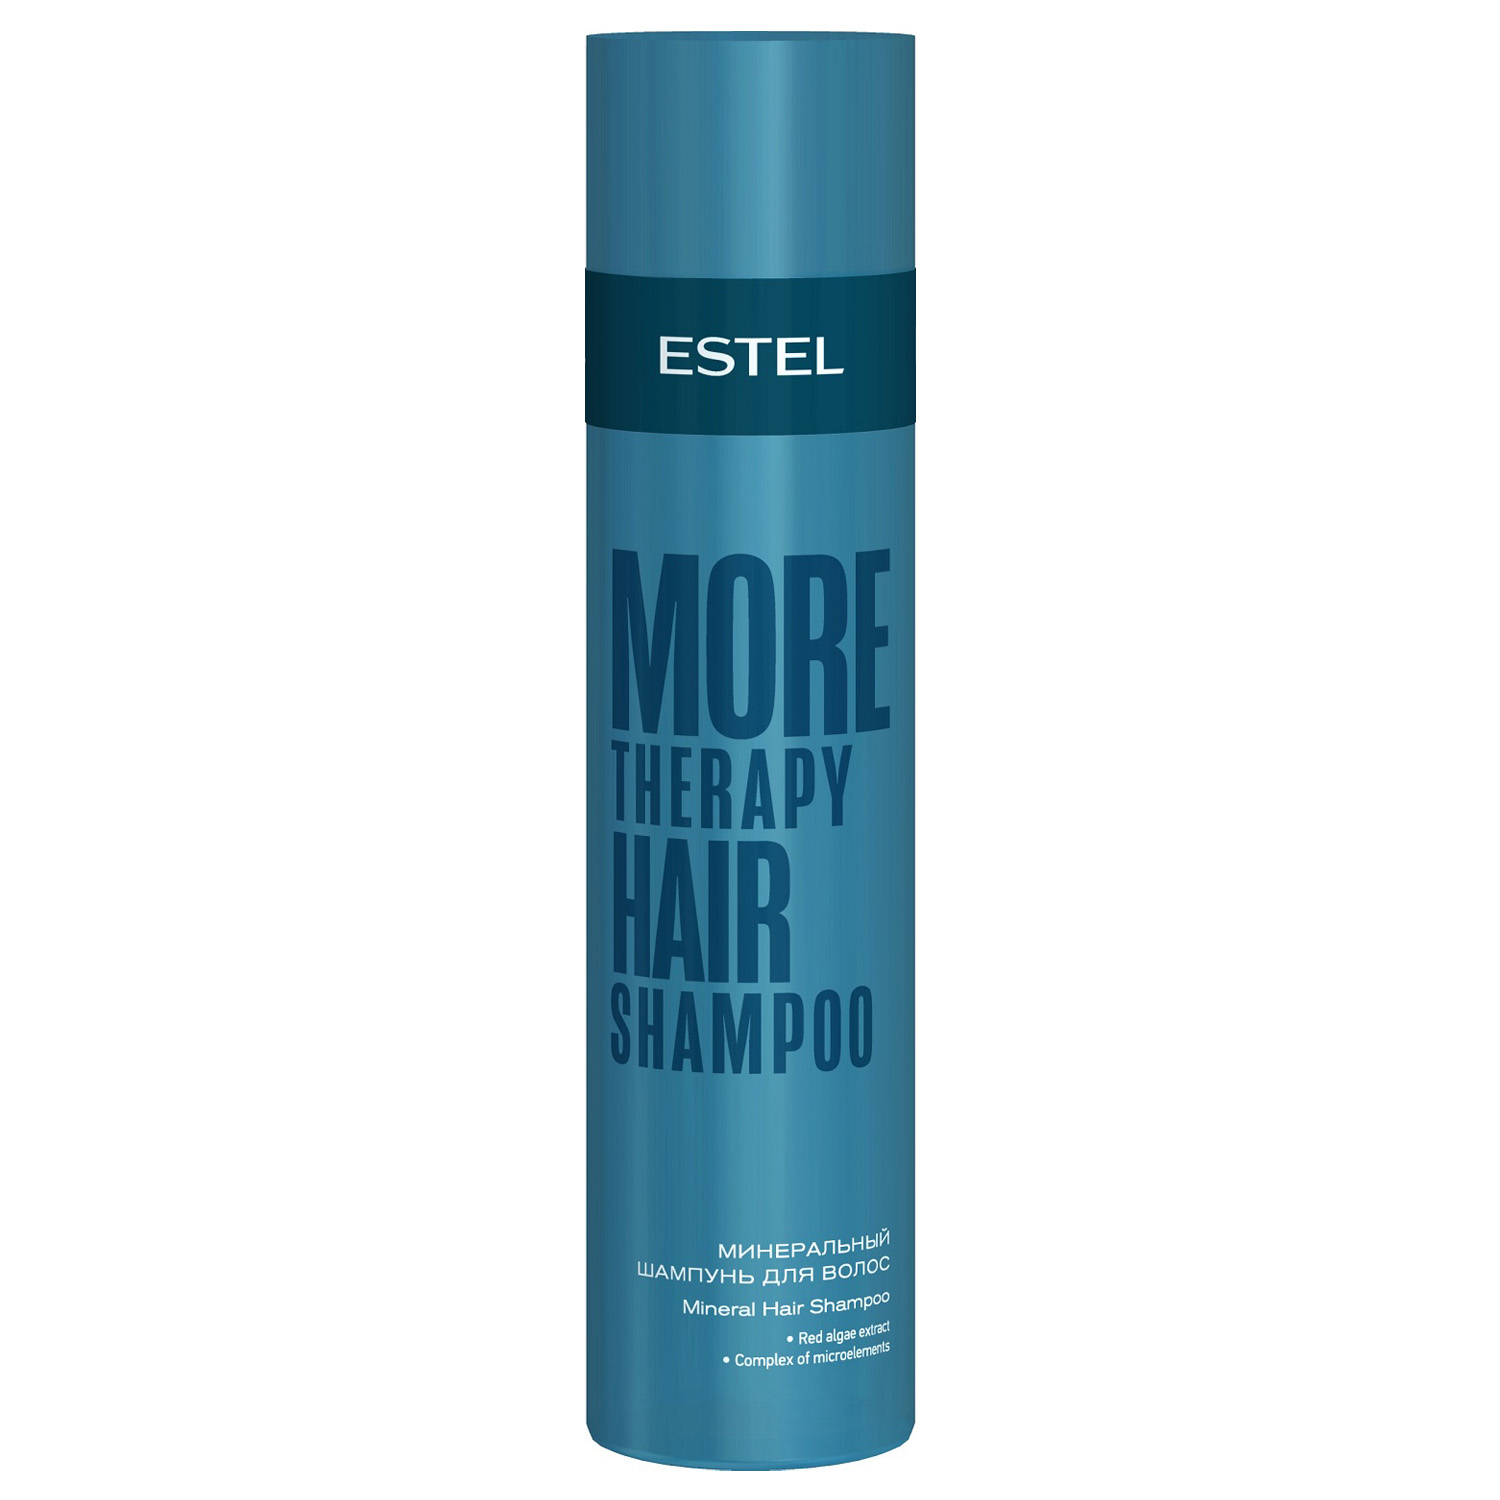 Estel Минеральный шампунь для волос, 250 мл (Estel, More Therapy) минеральный шампунь для волос estel more therapy 250 мл